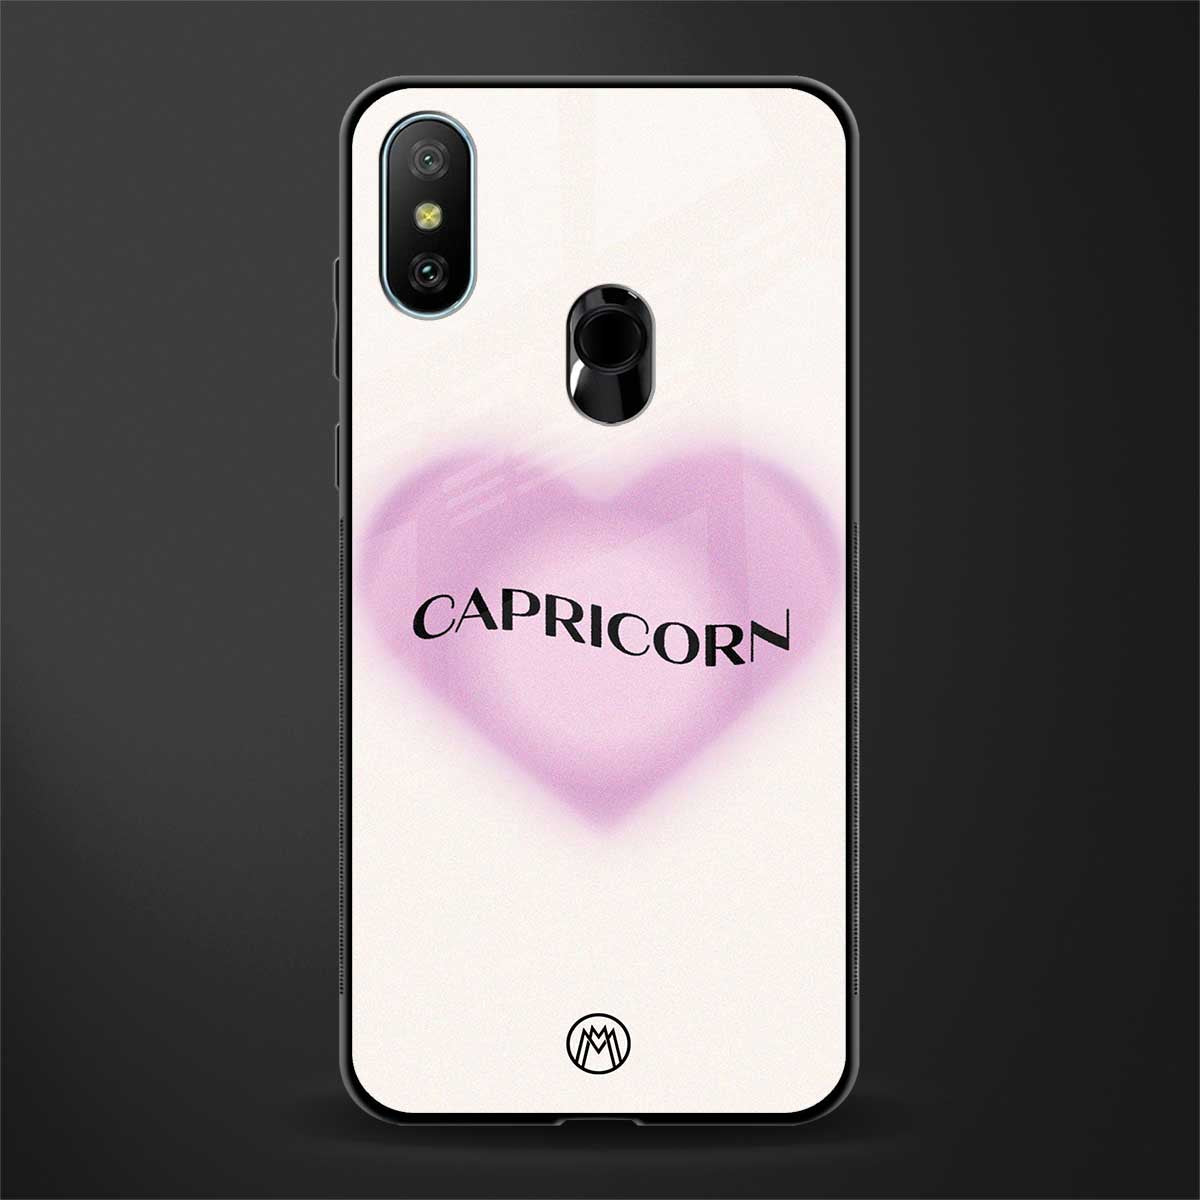 capricorn minimalistic glass case for redmi 6 pro image